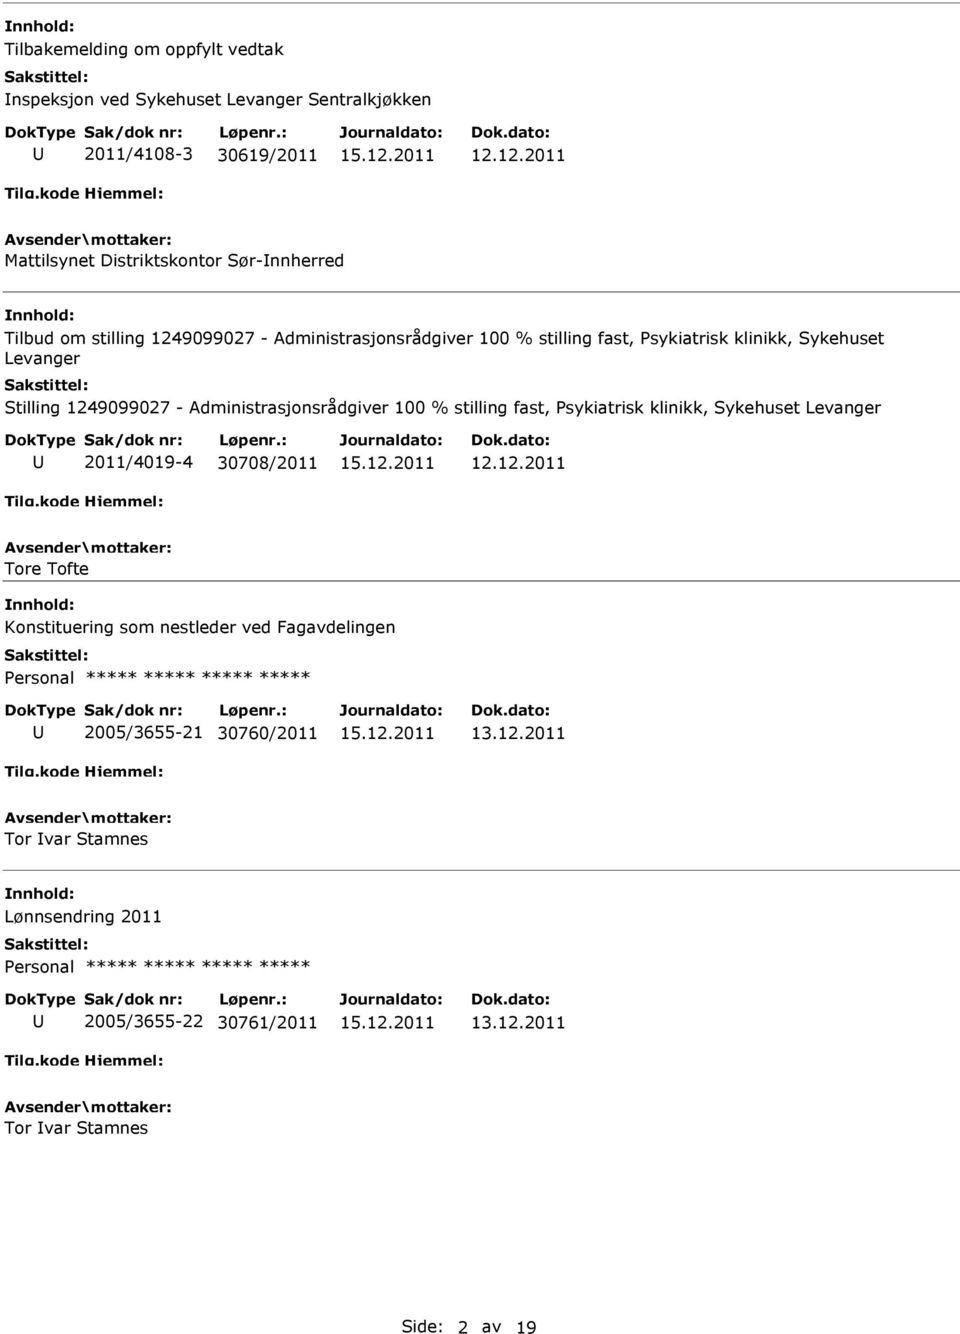 Sykehuset Levanger Stilling 1249099027 - Administrasjonsrådgiver 100 % stilling fast, Psykiatrisk klinikk, Sykehuset Levanger 2011/4019-4 30708/2011